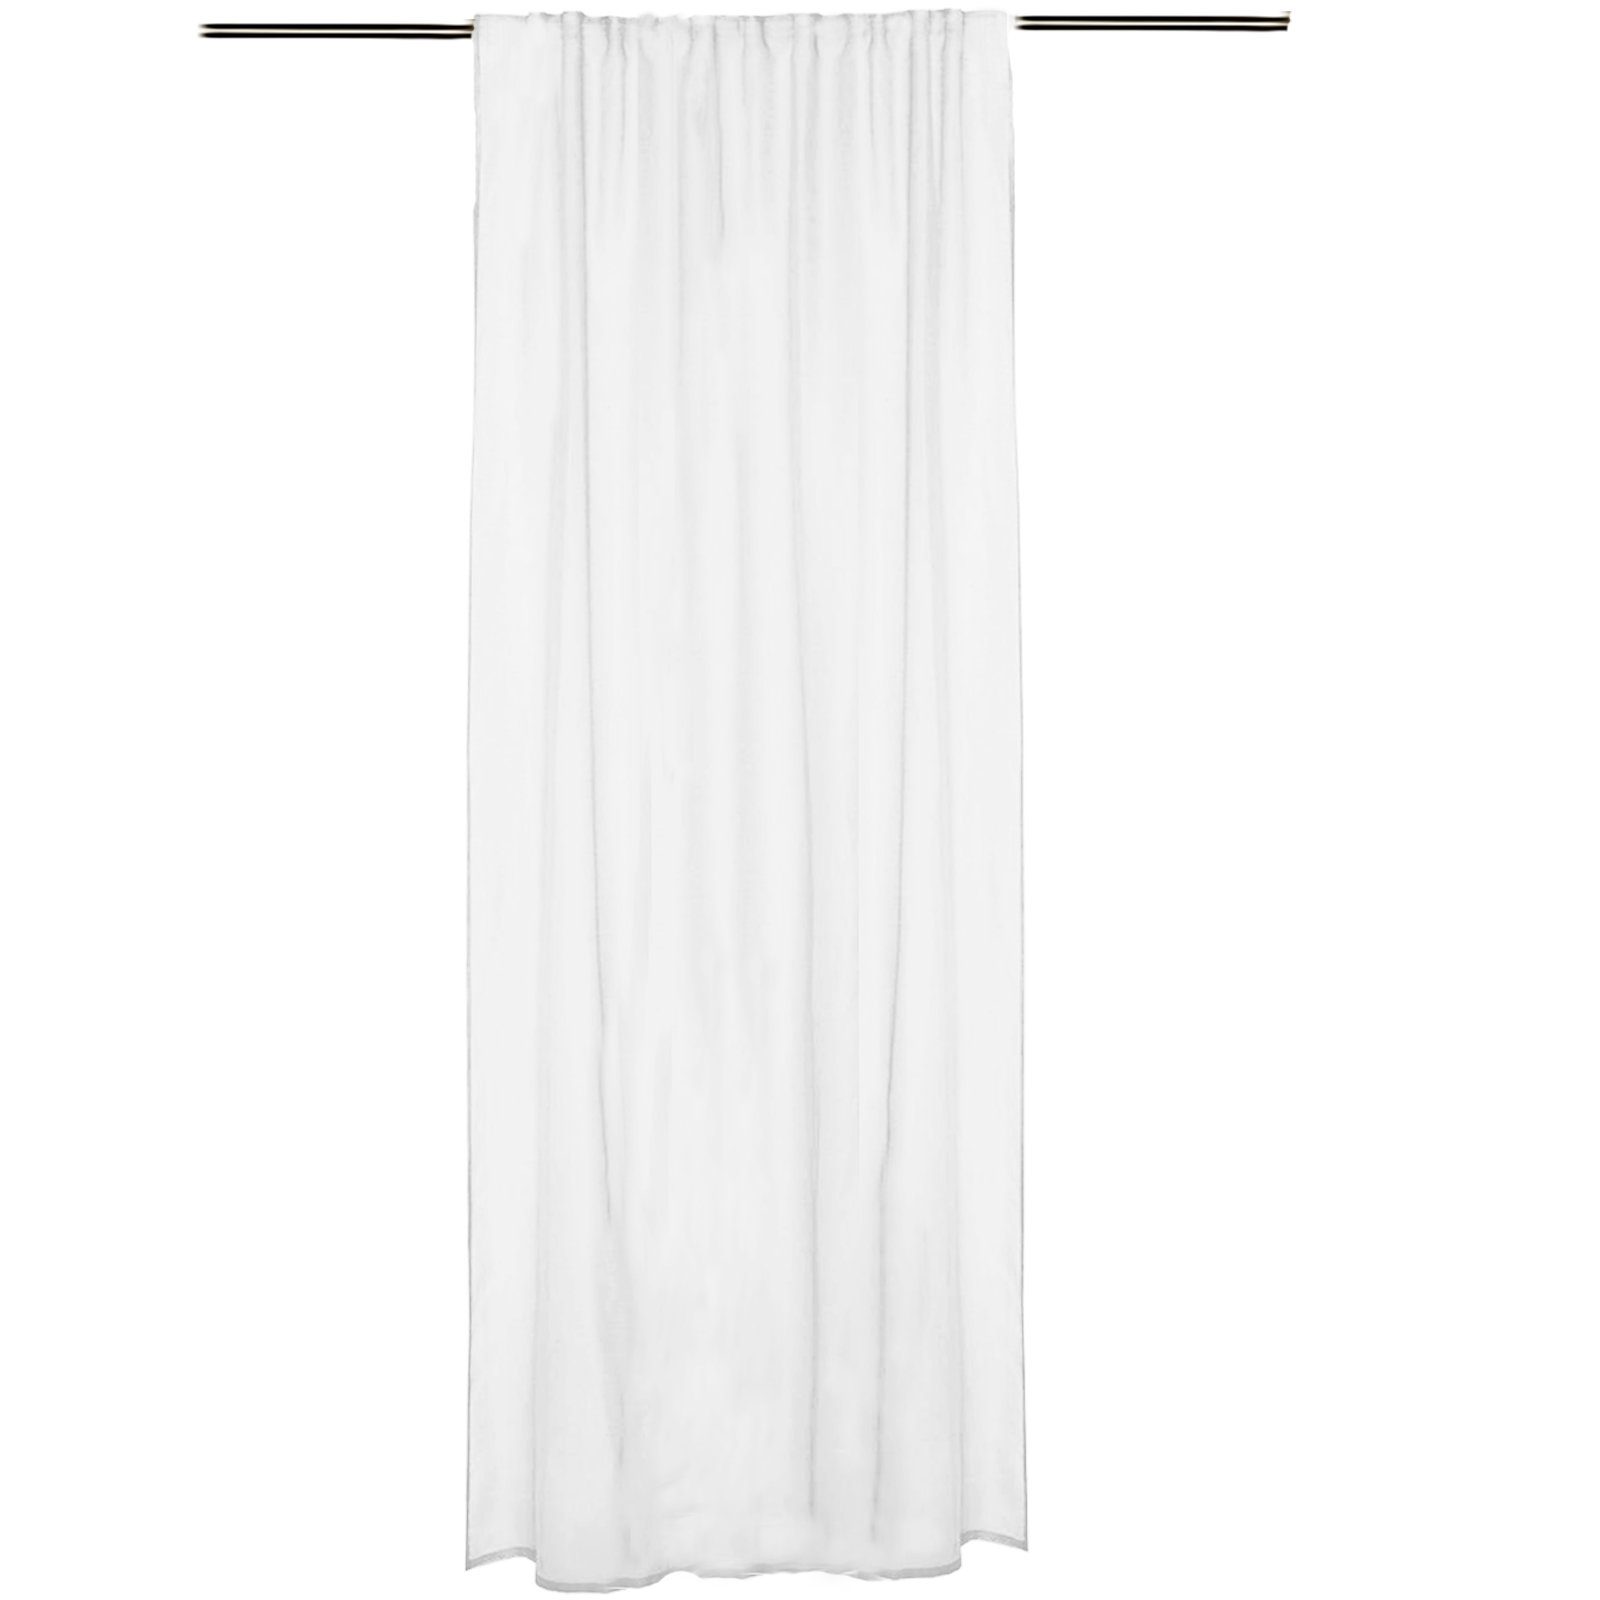 Vorhang Vorhang transparent 140x245cm - Schlaufenschal 100% Polyester - weiß, JEMIDI